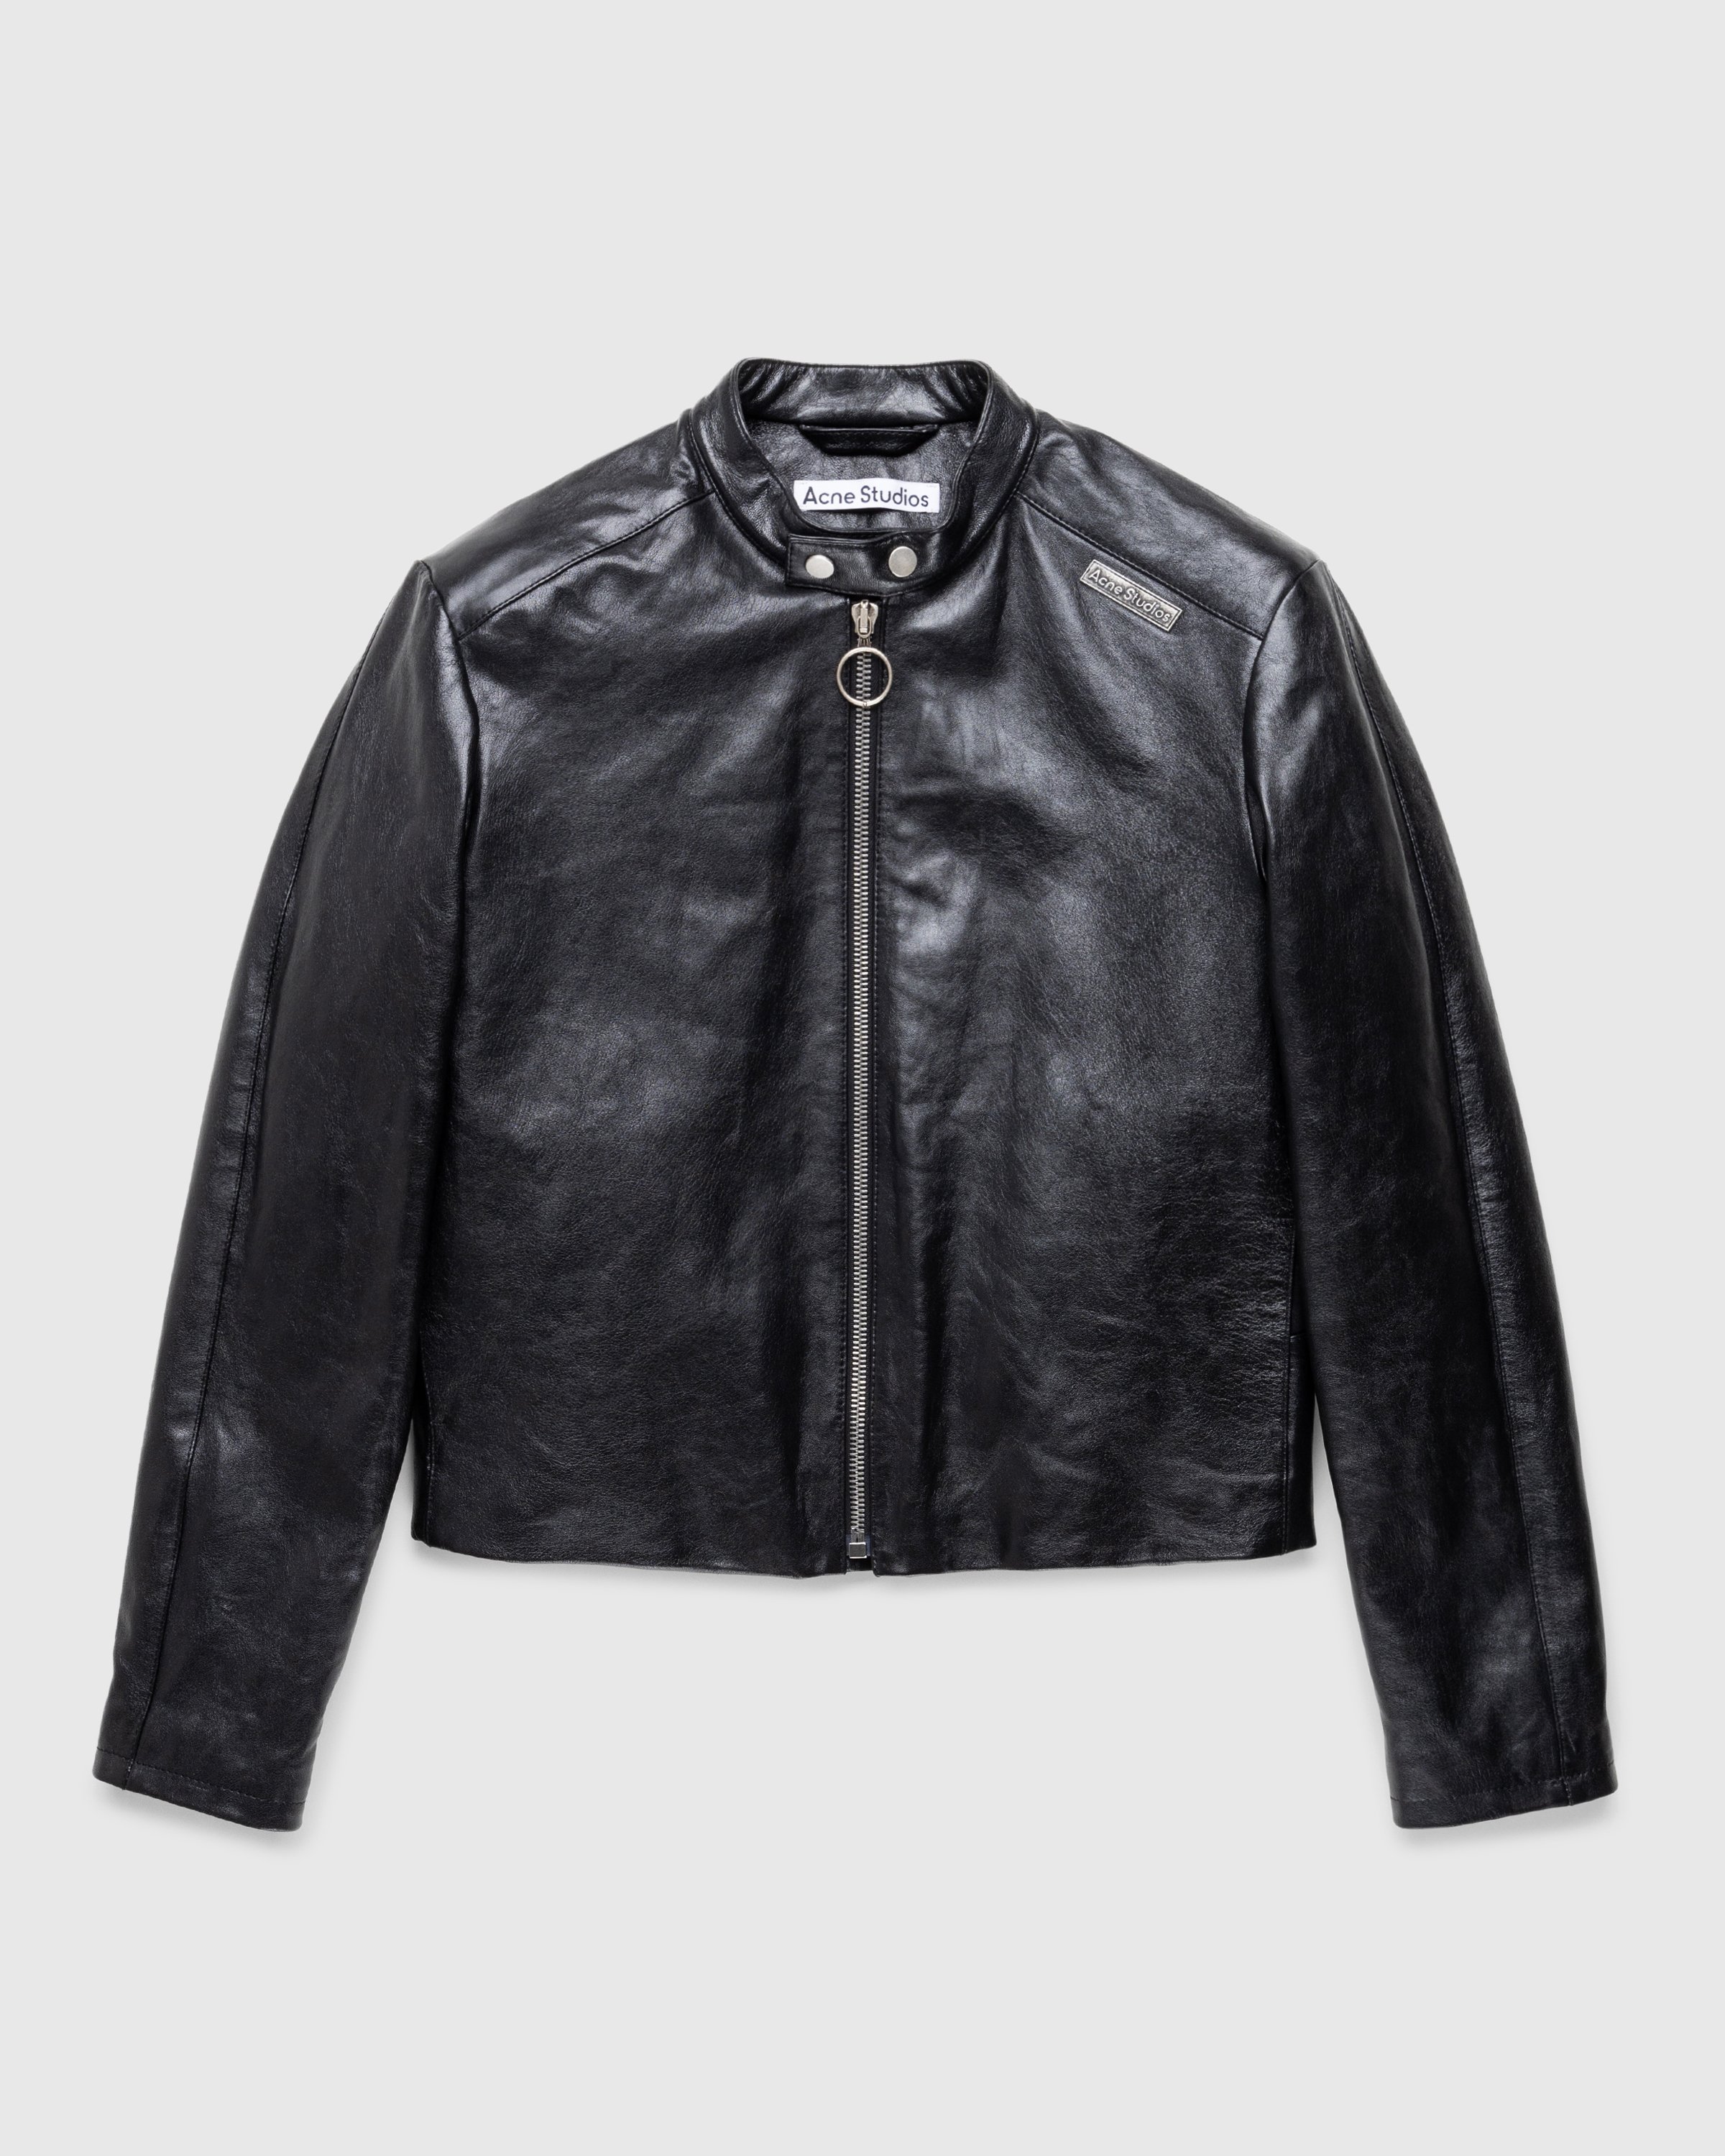 Acne Studios - Leather Jacket Black - Clothing - Black - Image 1